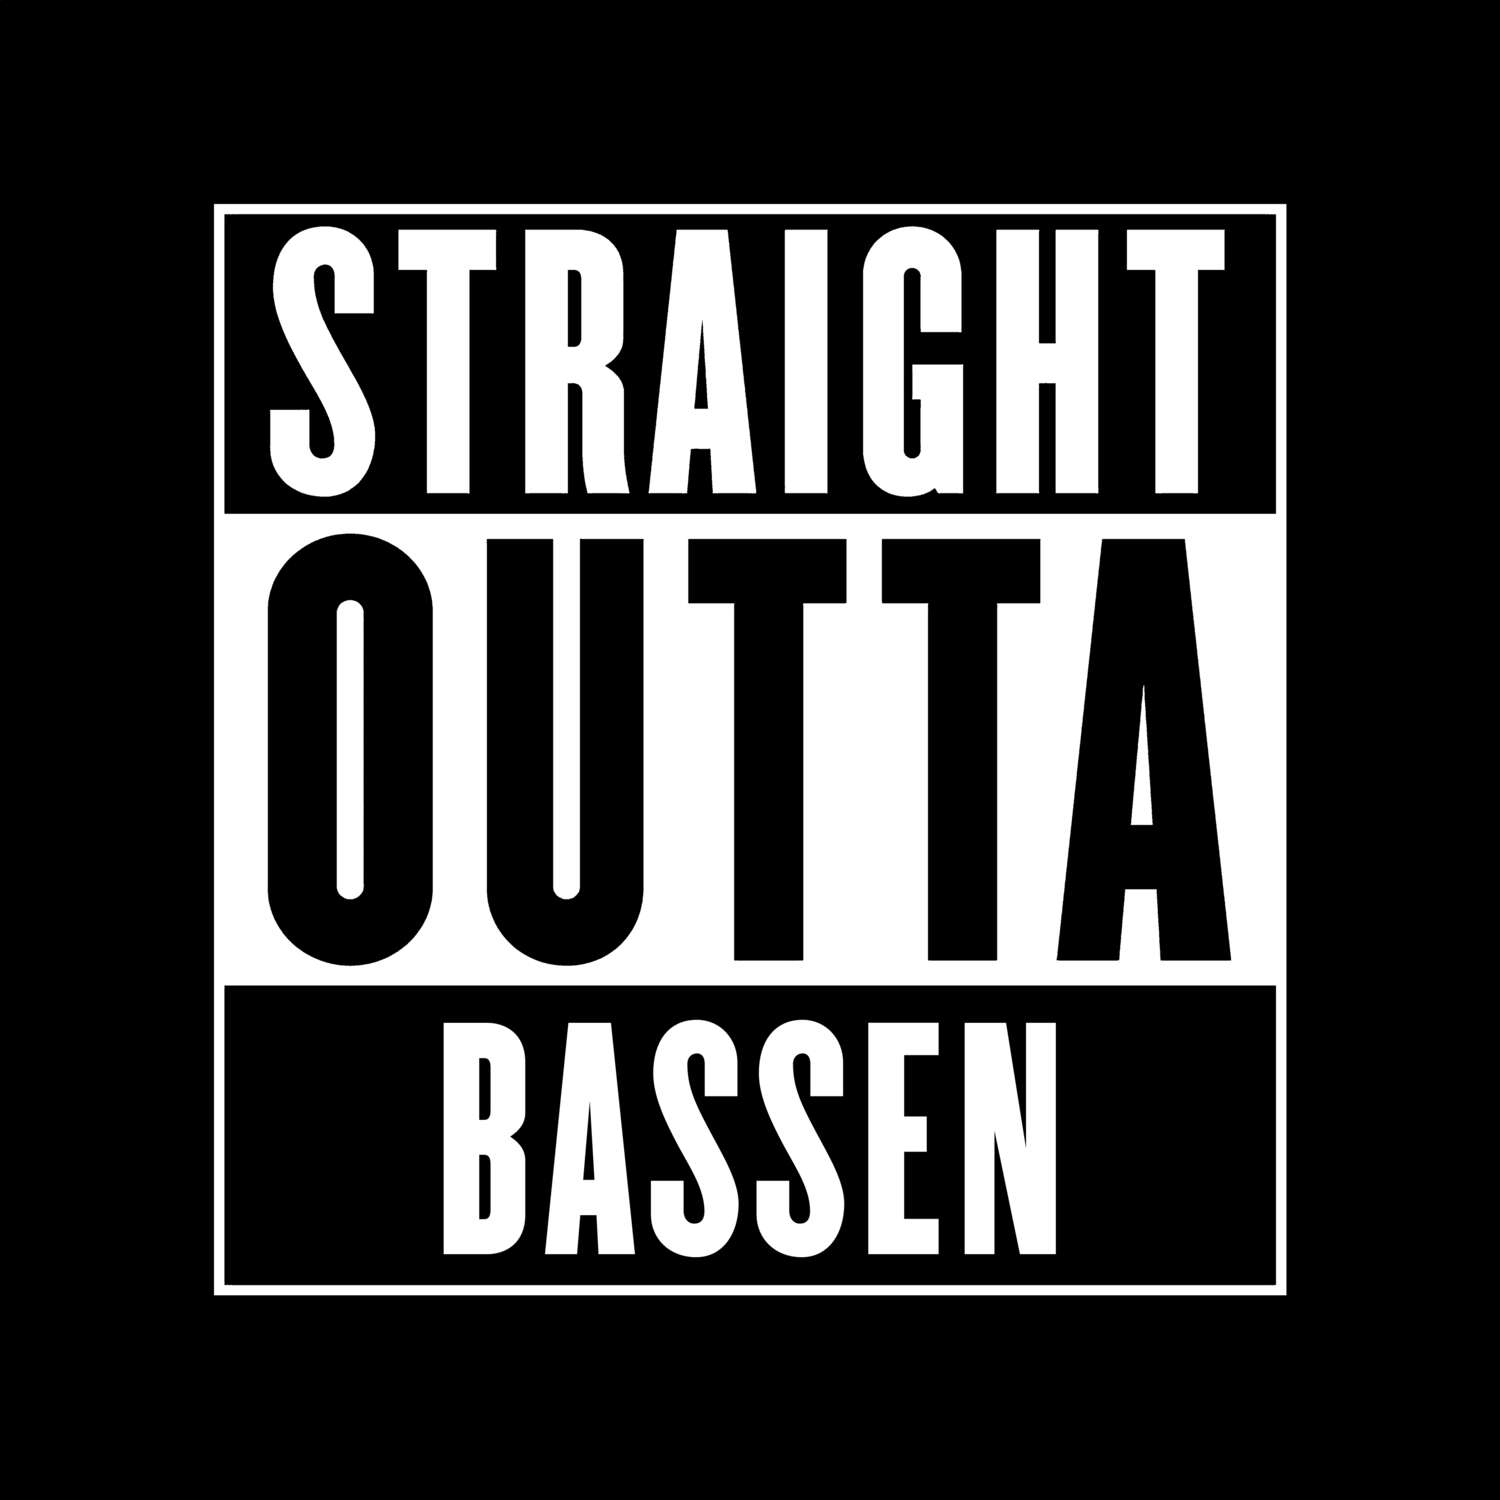 Bassen T-Shirt »Straight Outta«